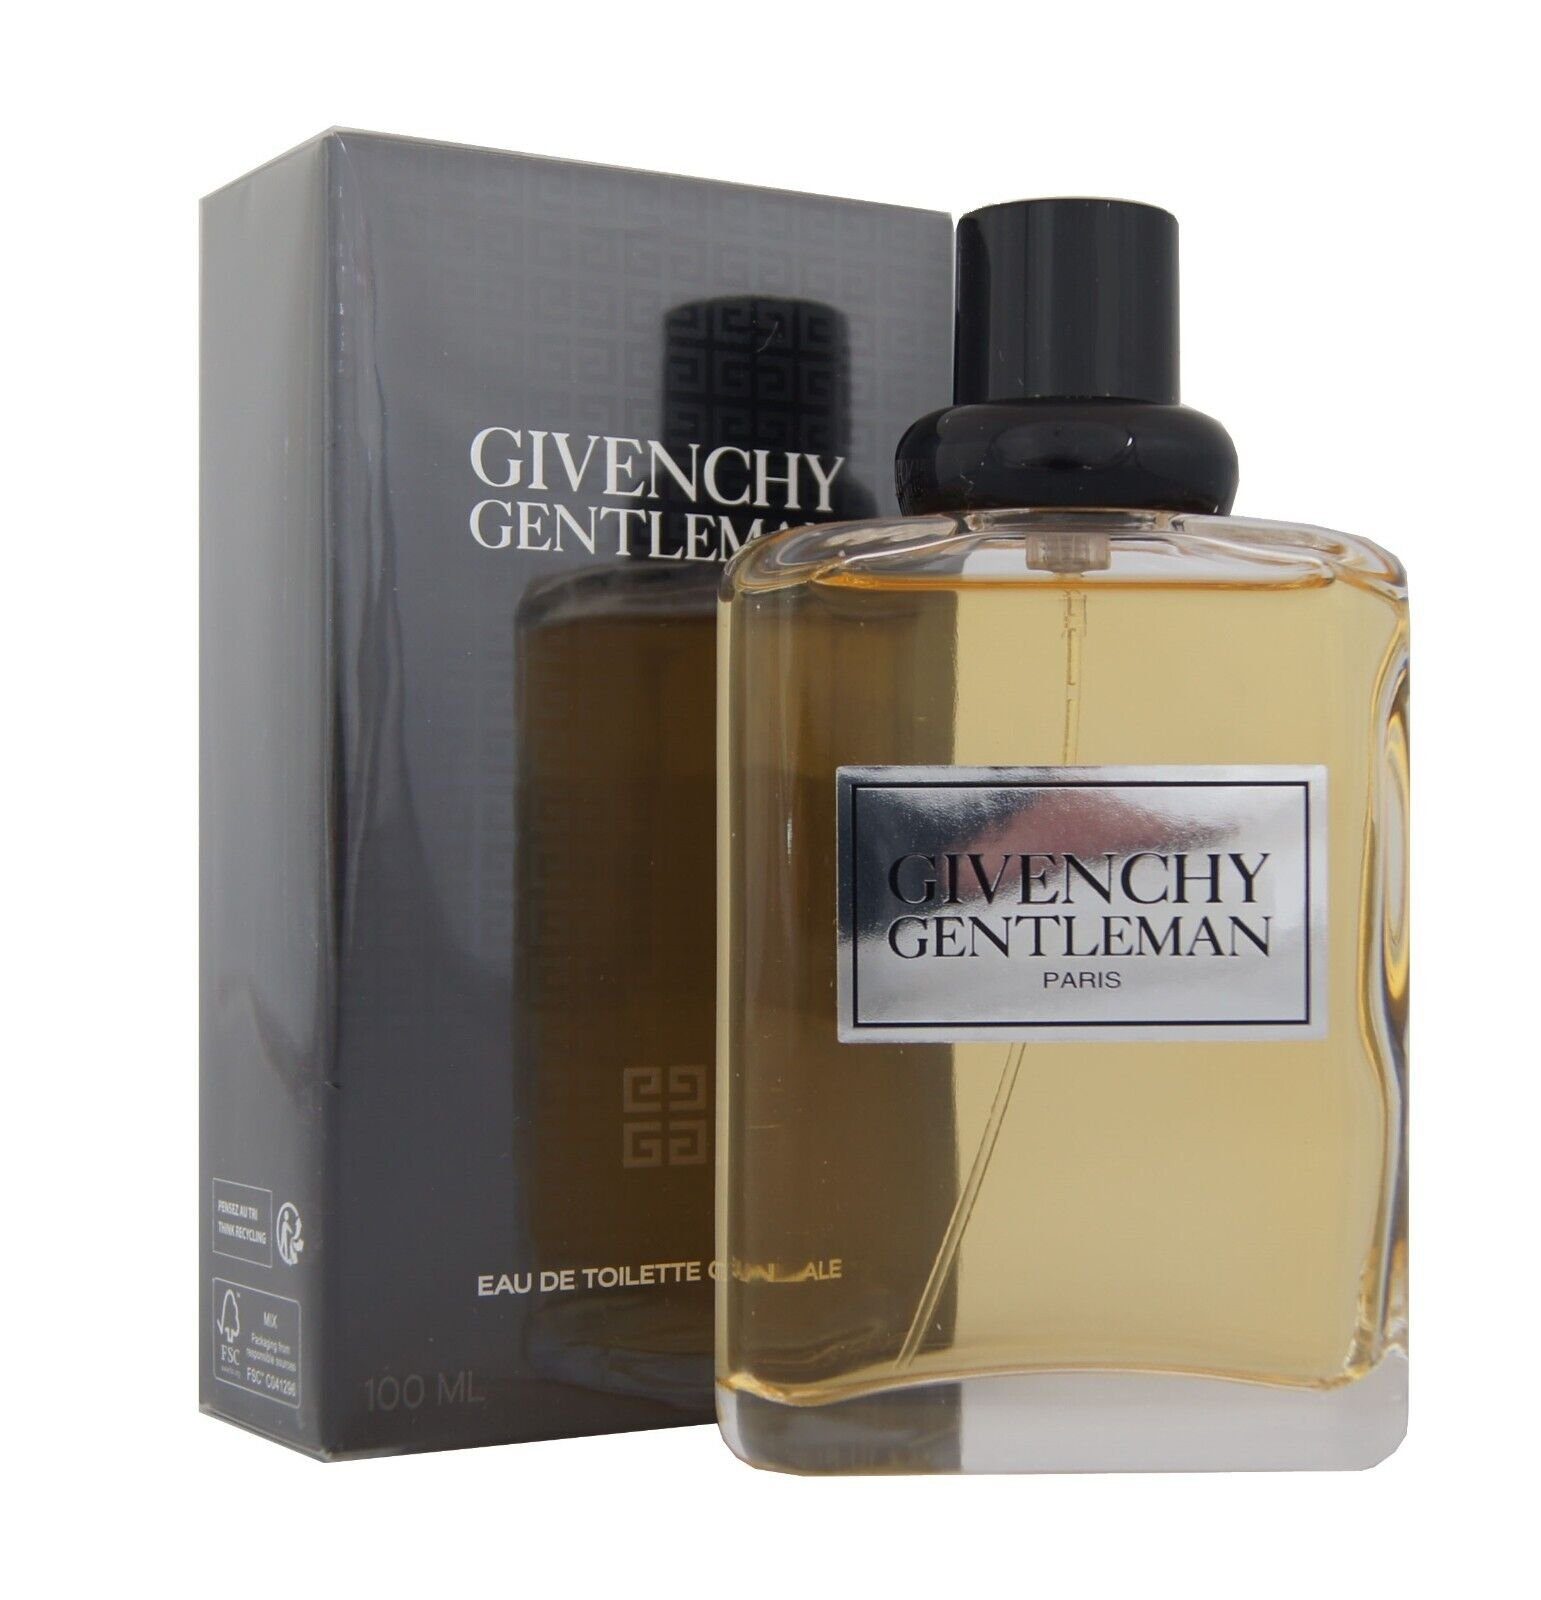 GIVENCHY Eau de Toilette Givenchy Gentleman Eau de Toilette Originale edt 100ml.